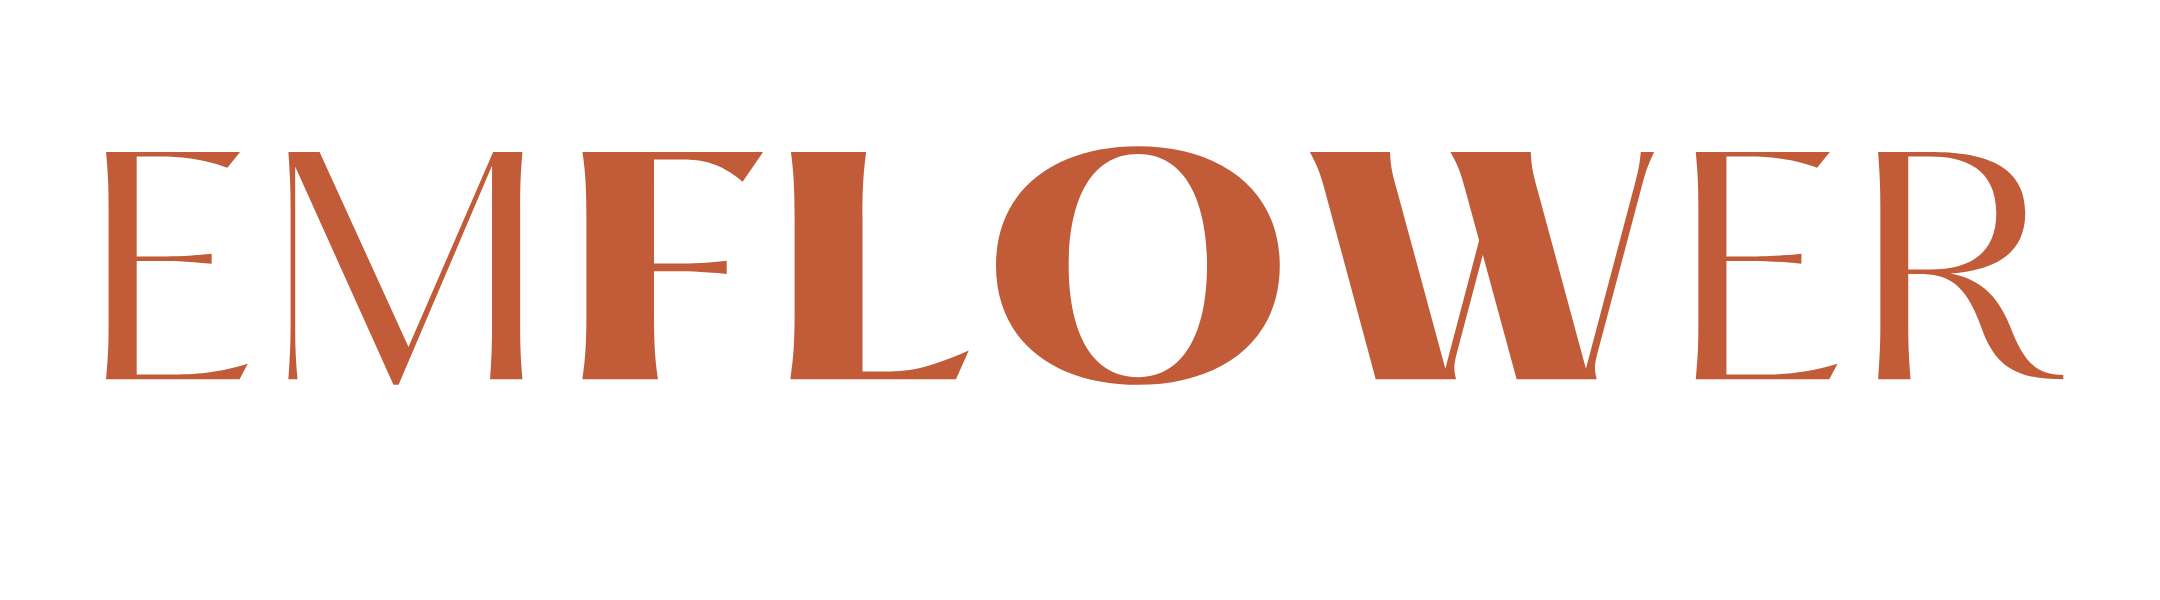 Emflower Website Logo Orange-1